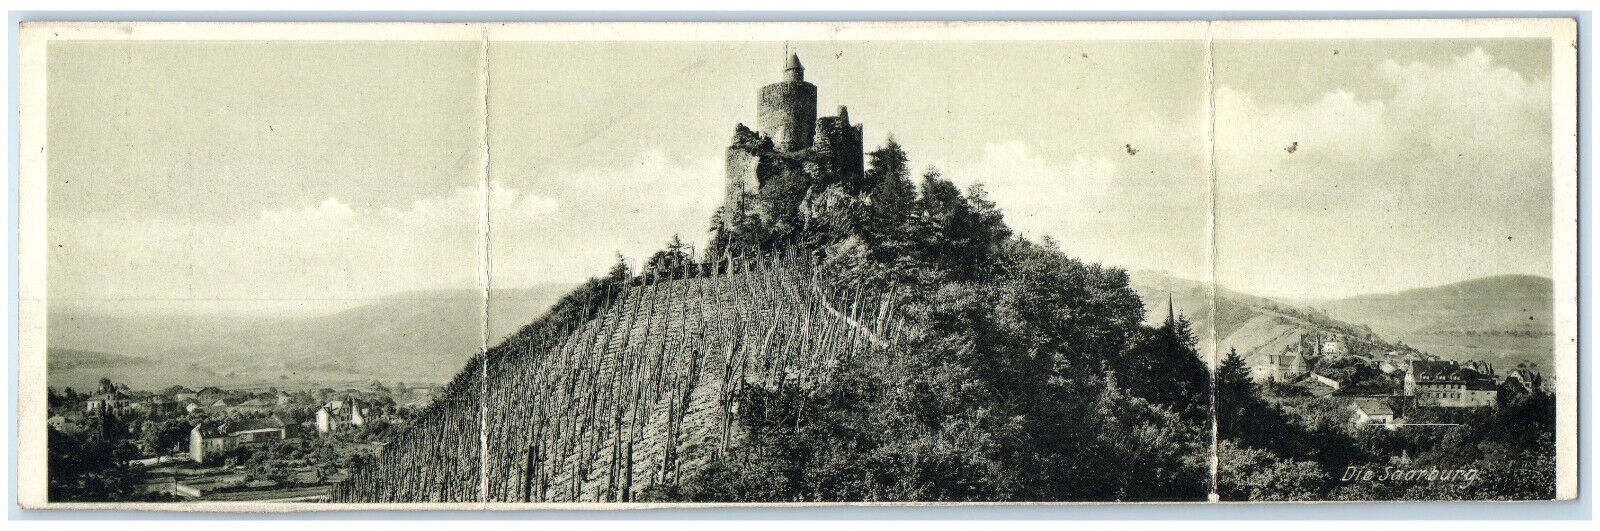 1918 Die Saarburg Rhineland-Palatinate Germany Panorama Fold Out Postcard